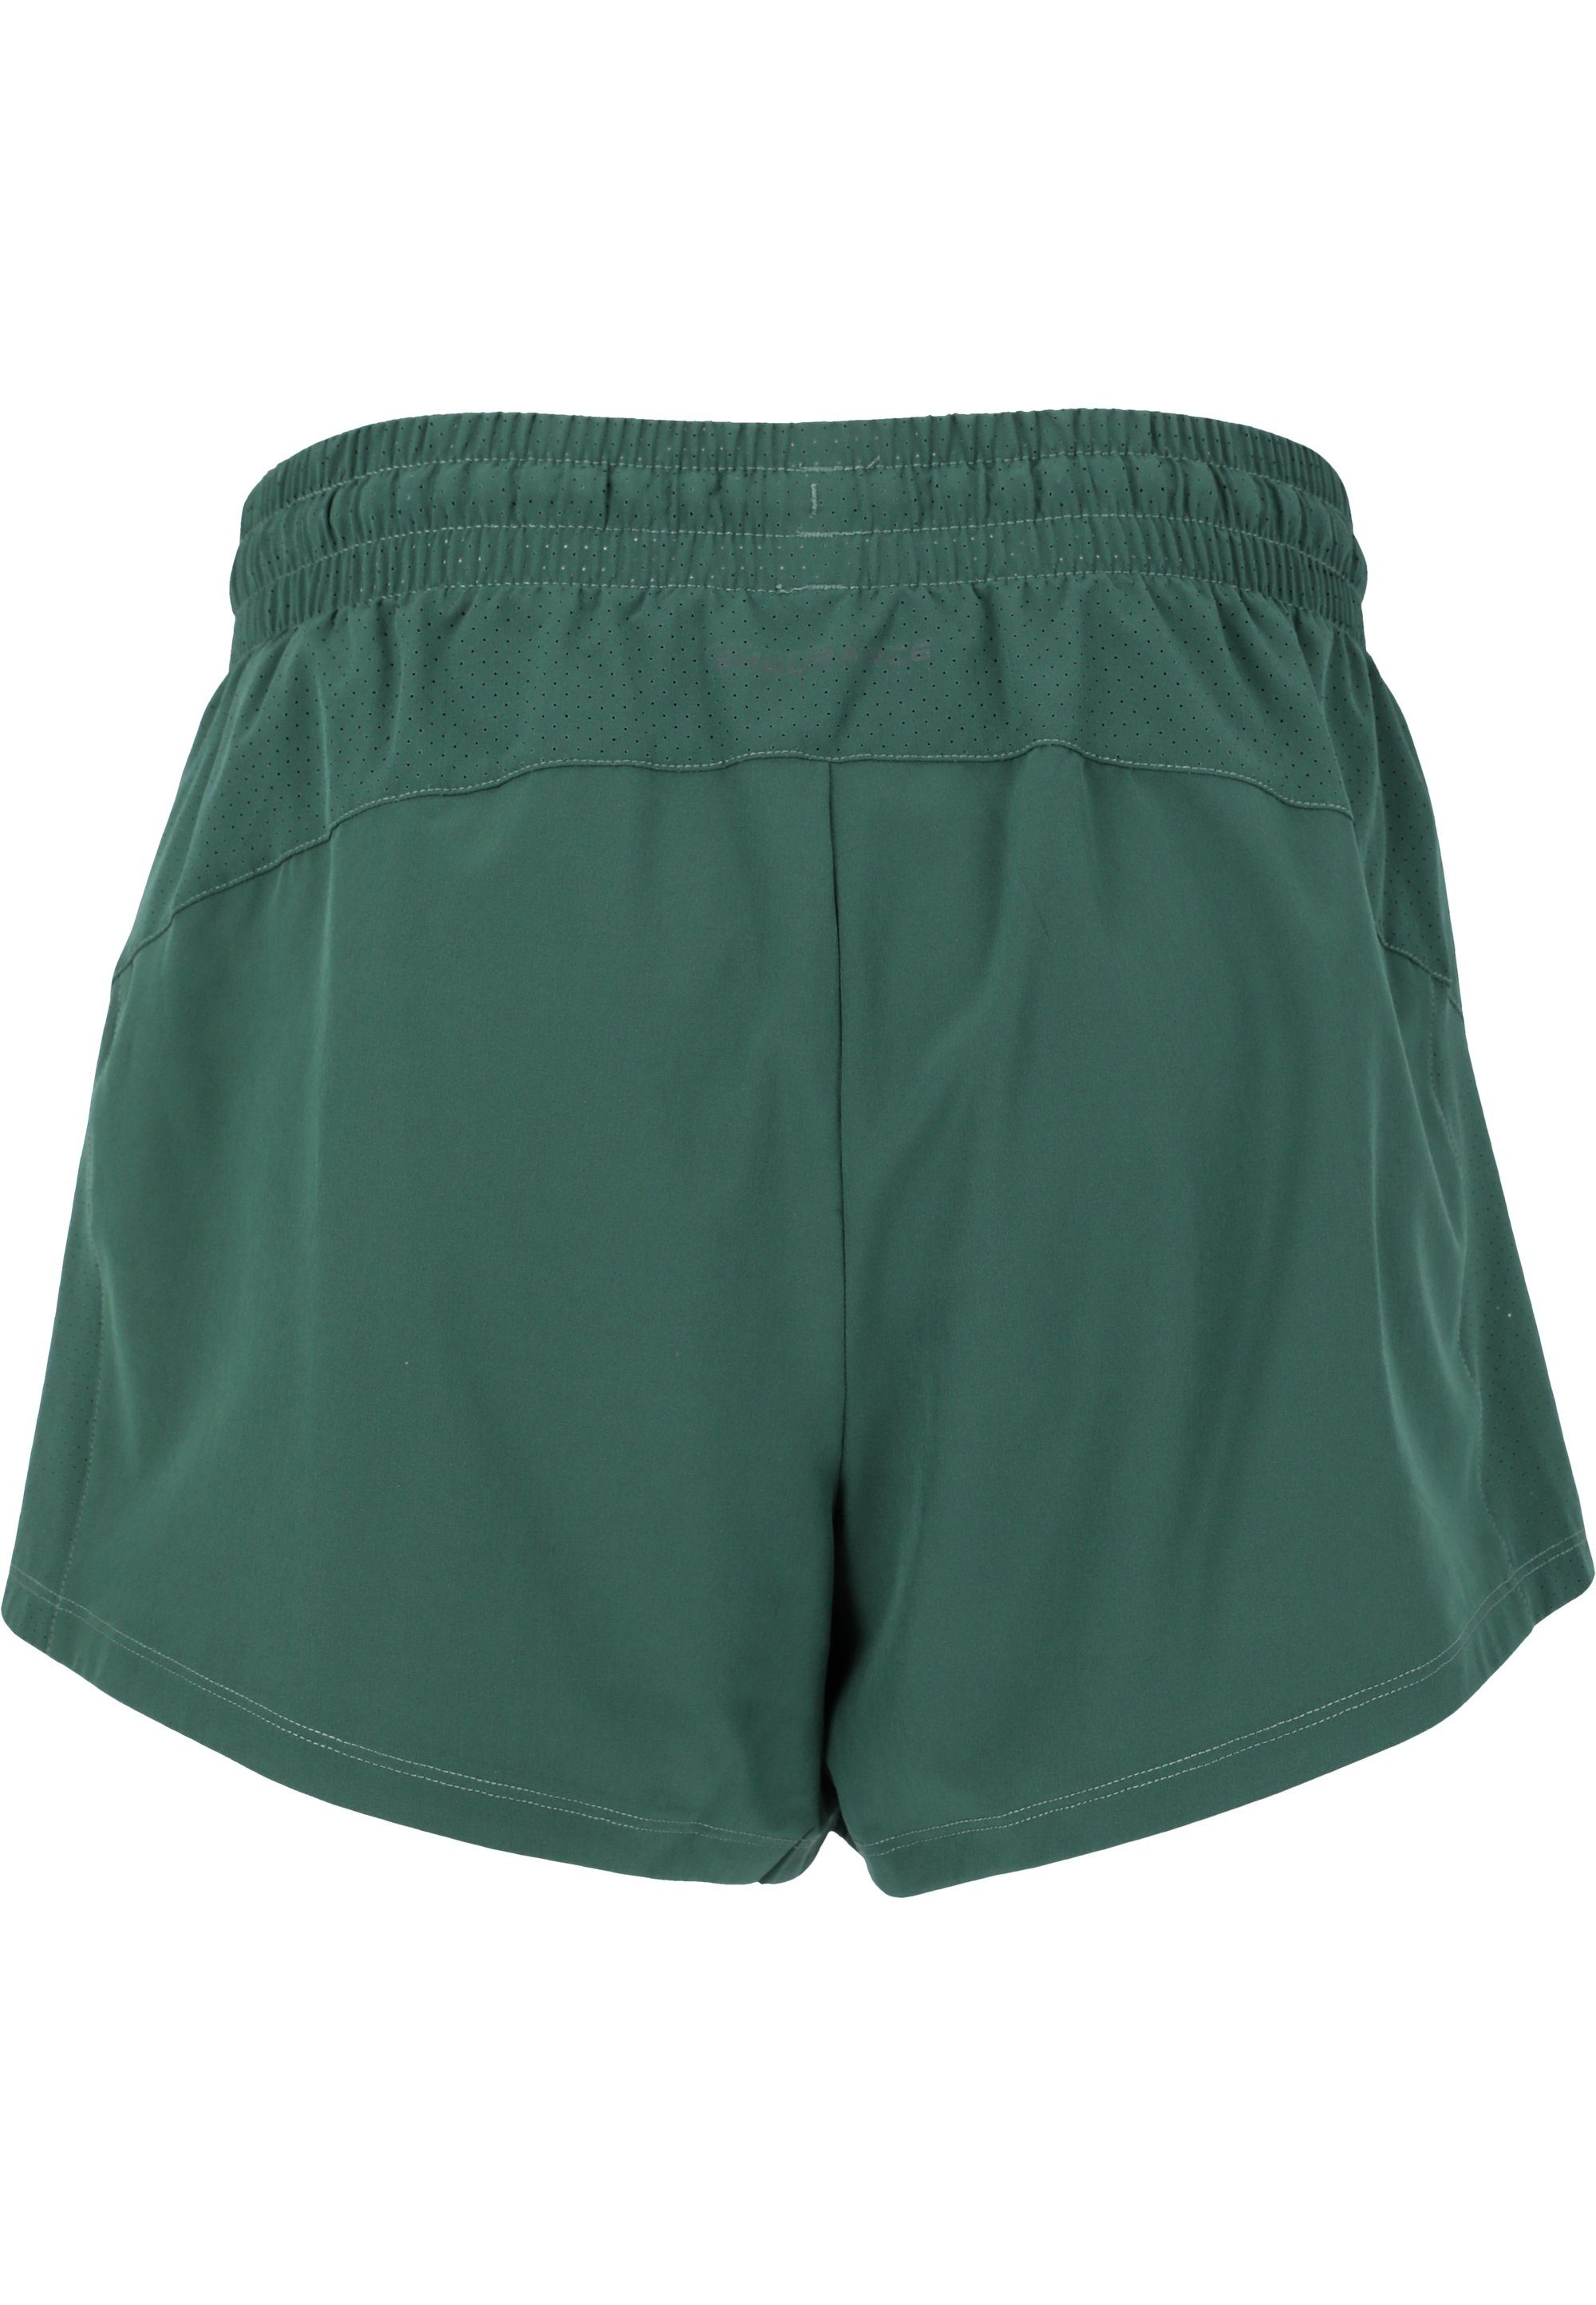 ENDURANCE Shorts Eslaire mit praktischen Taschen grün